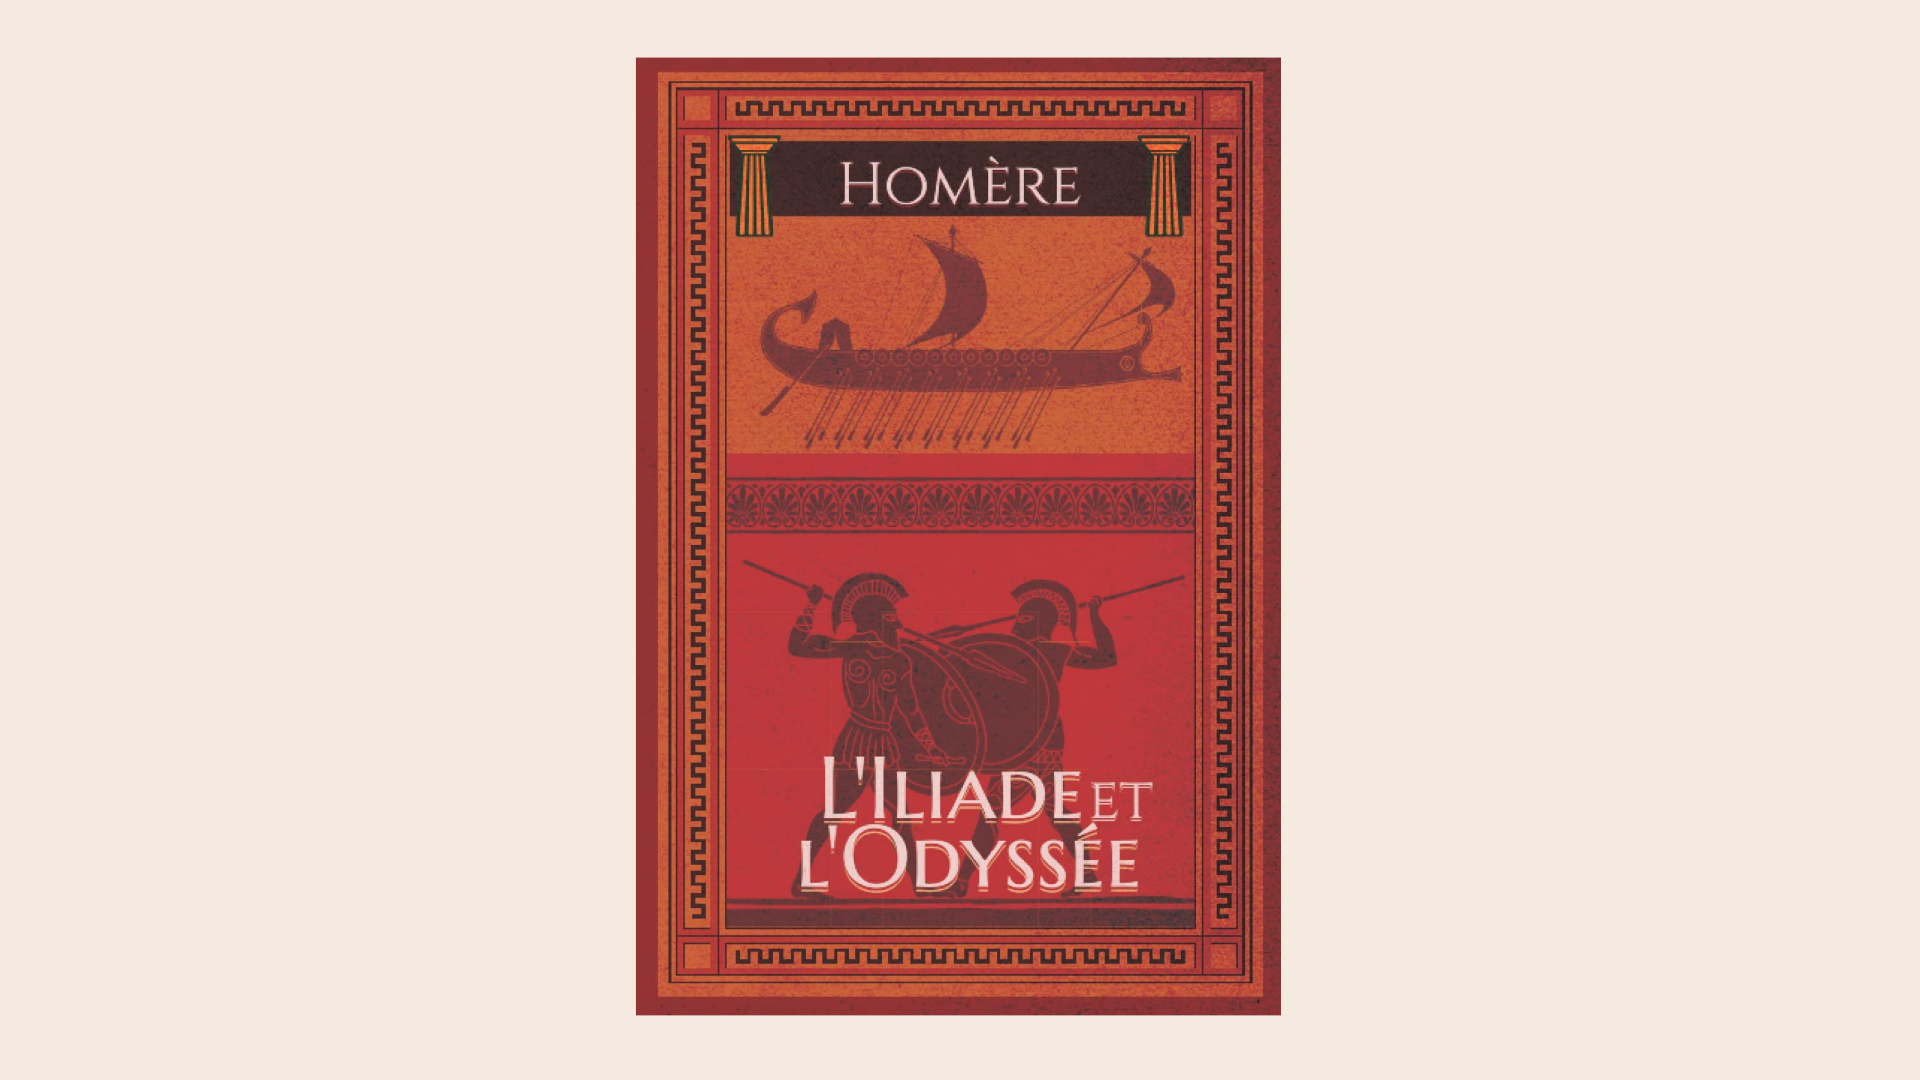 L'Iliade et l'Odyssée d'Homer, meilleur livre d'aventure de tous les temps